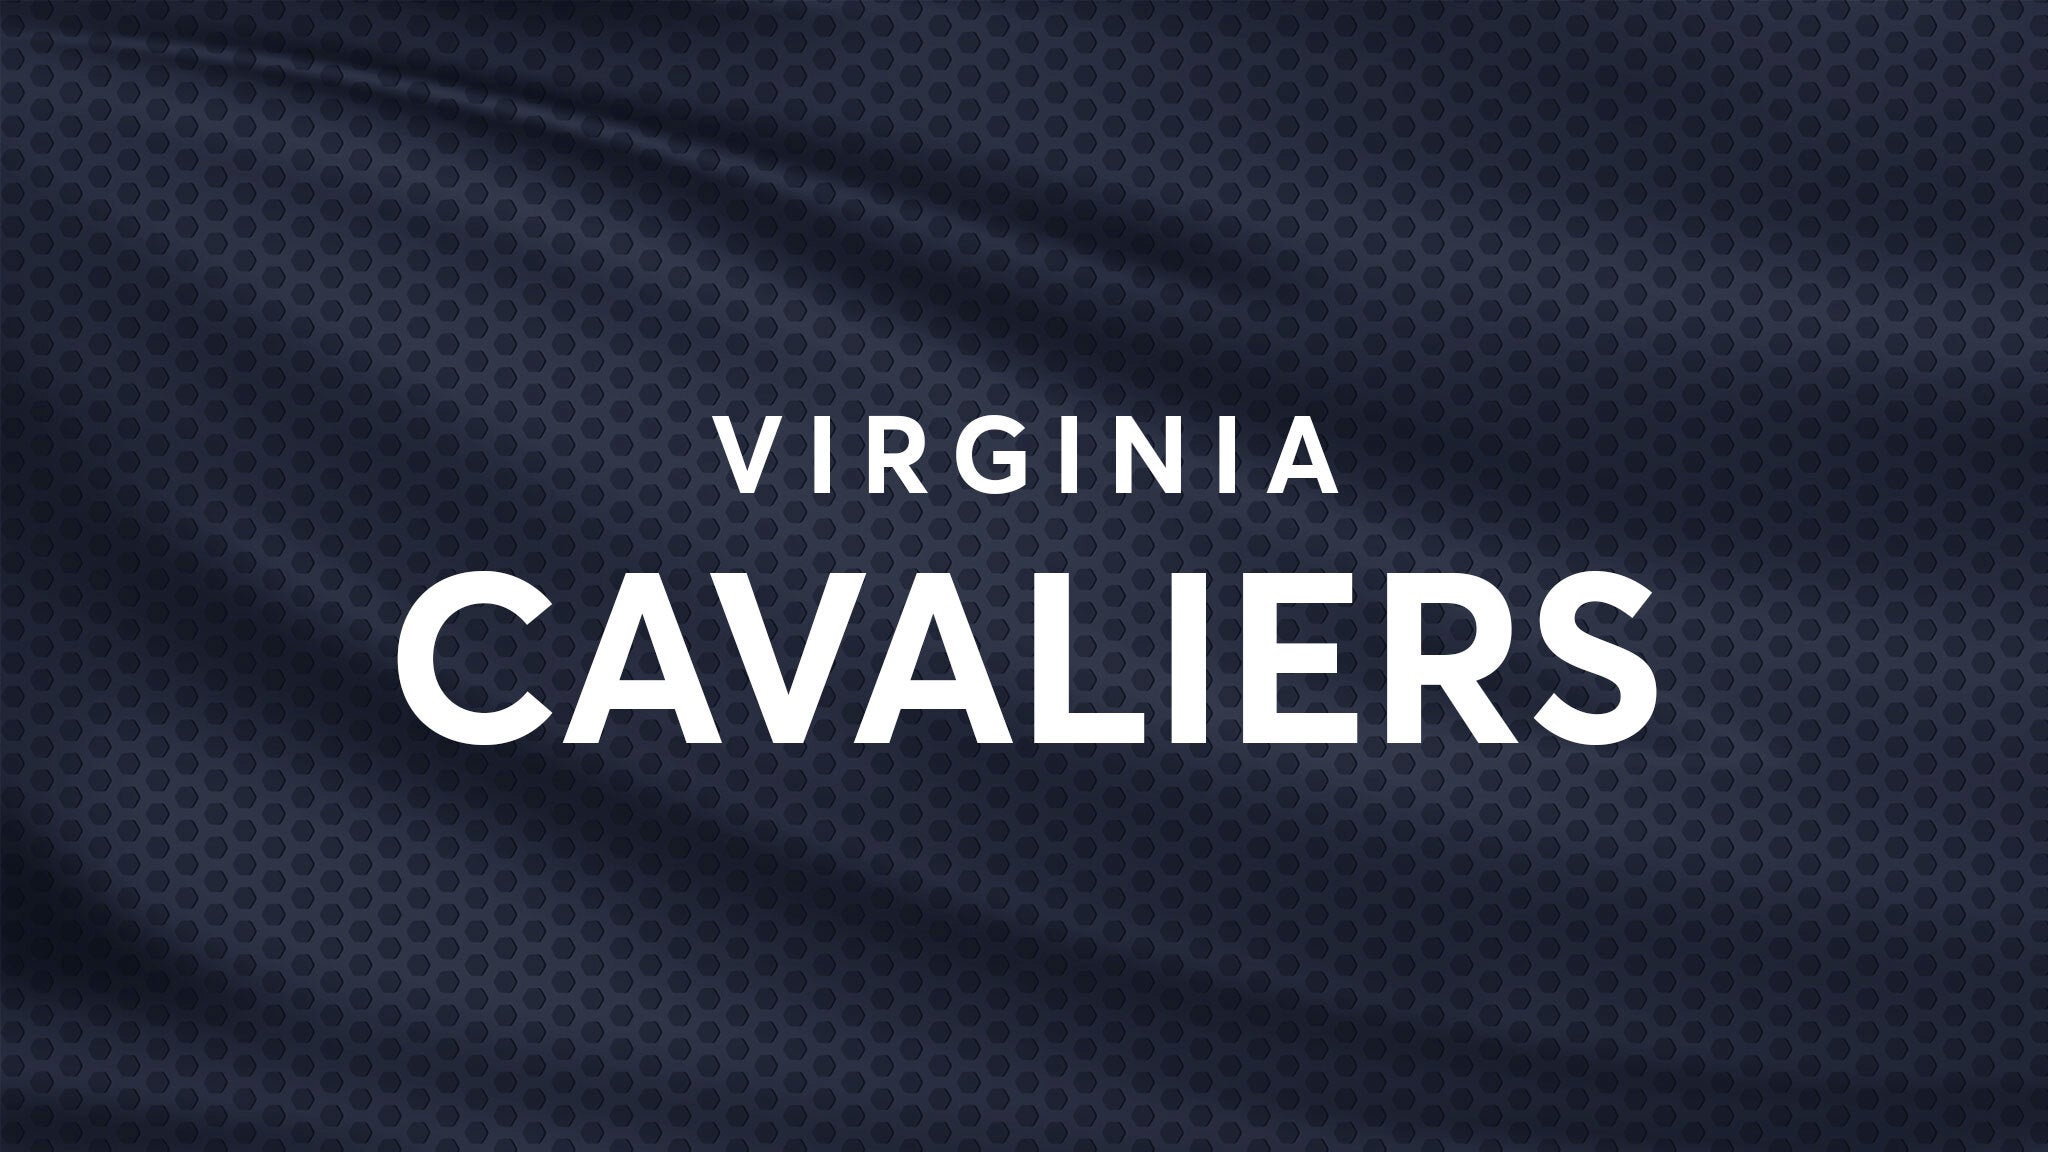 Virginia Cavaliers Baseball vs. Navy Midshipmen Baseball